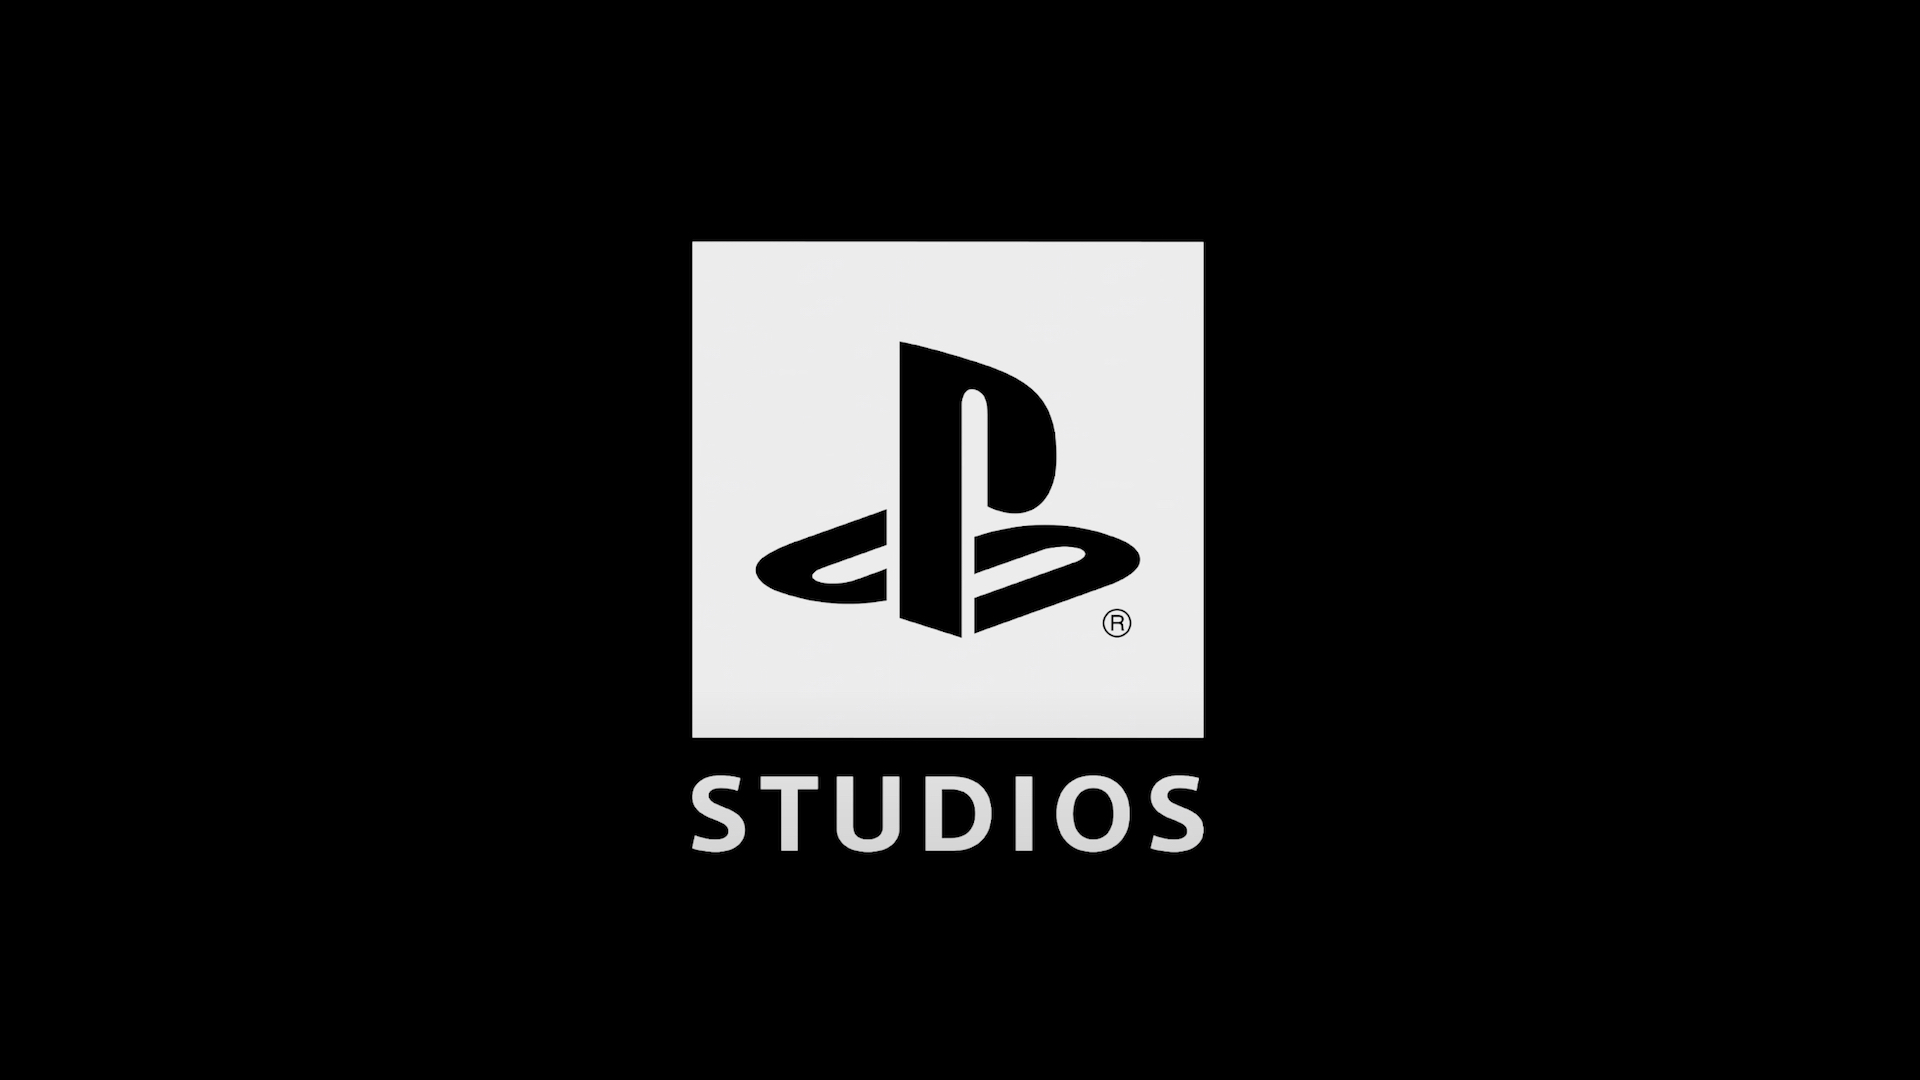 Sony သည် First Party Lineup သို့ ပေါင်းထည့်ရန် နောက်ထပ် Studios များကို “ရင်းနှီးမြှုပ်နှံရန် သို့မဟုတ် ဝယ်ယူရန်” စီစဉ်နေသည်။